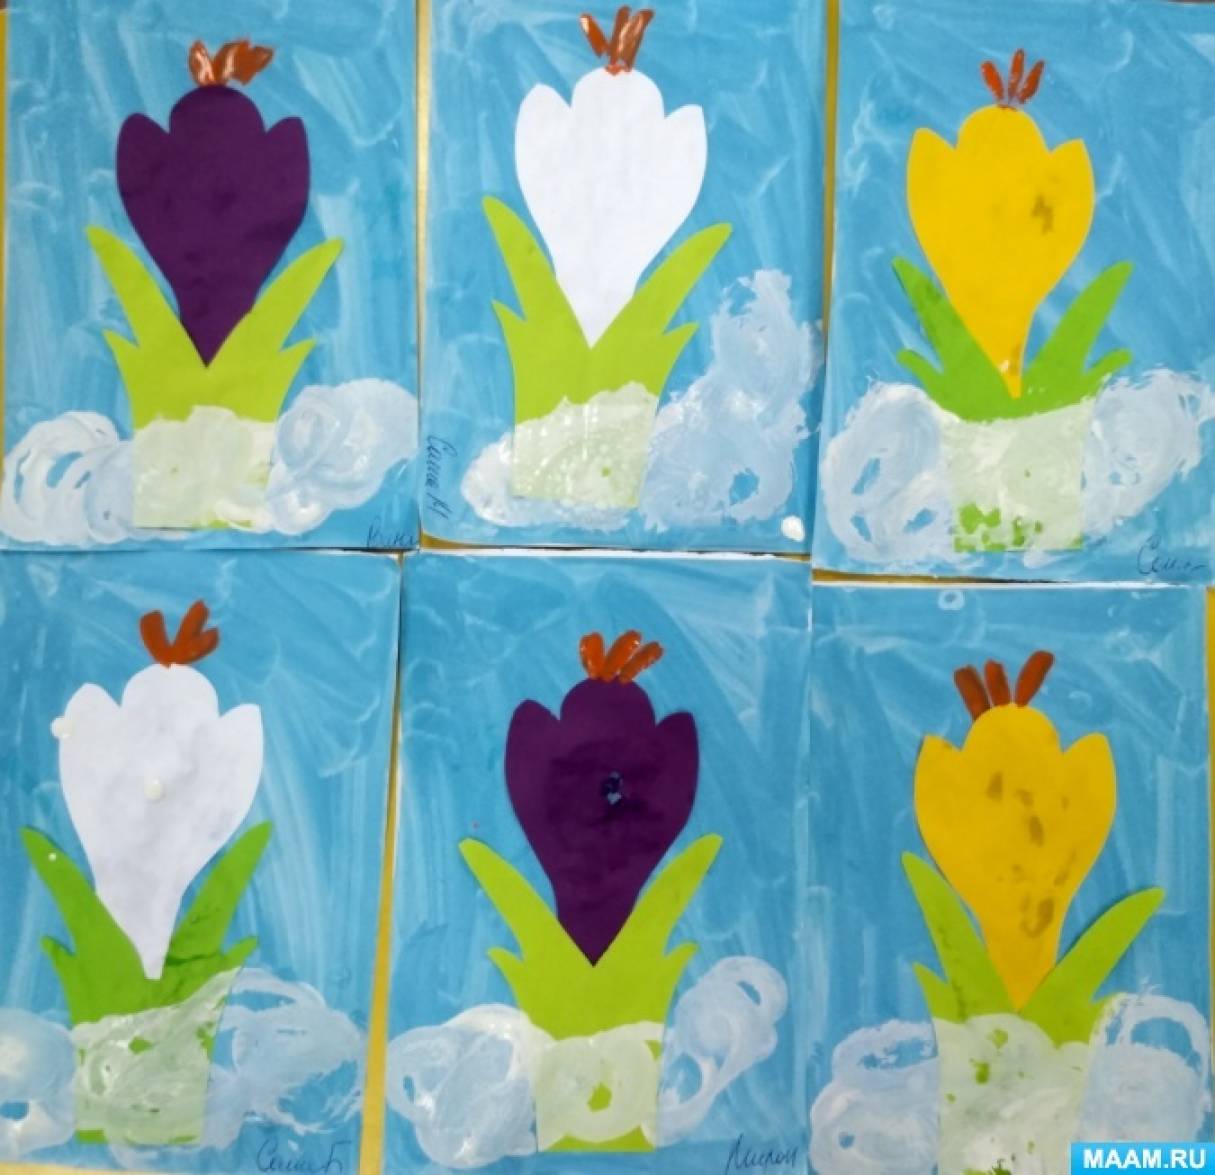 Цветок надежды крокус оригами. Поделка из б маги крокусы. Поделка крокусы для детей. Рисование крокусы в средней группе. Аппликация крокусы в младшей группе.